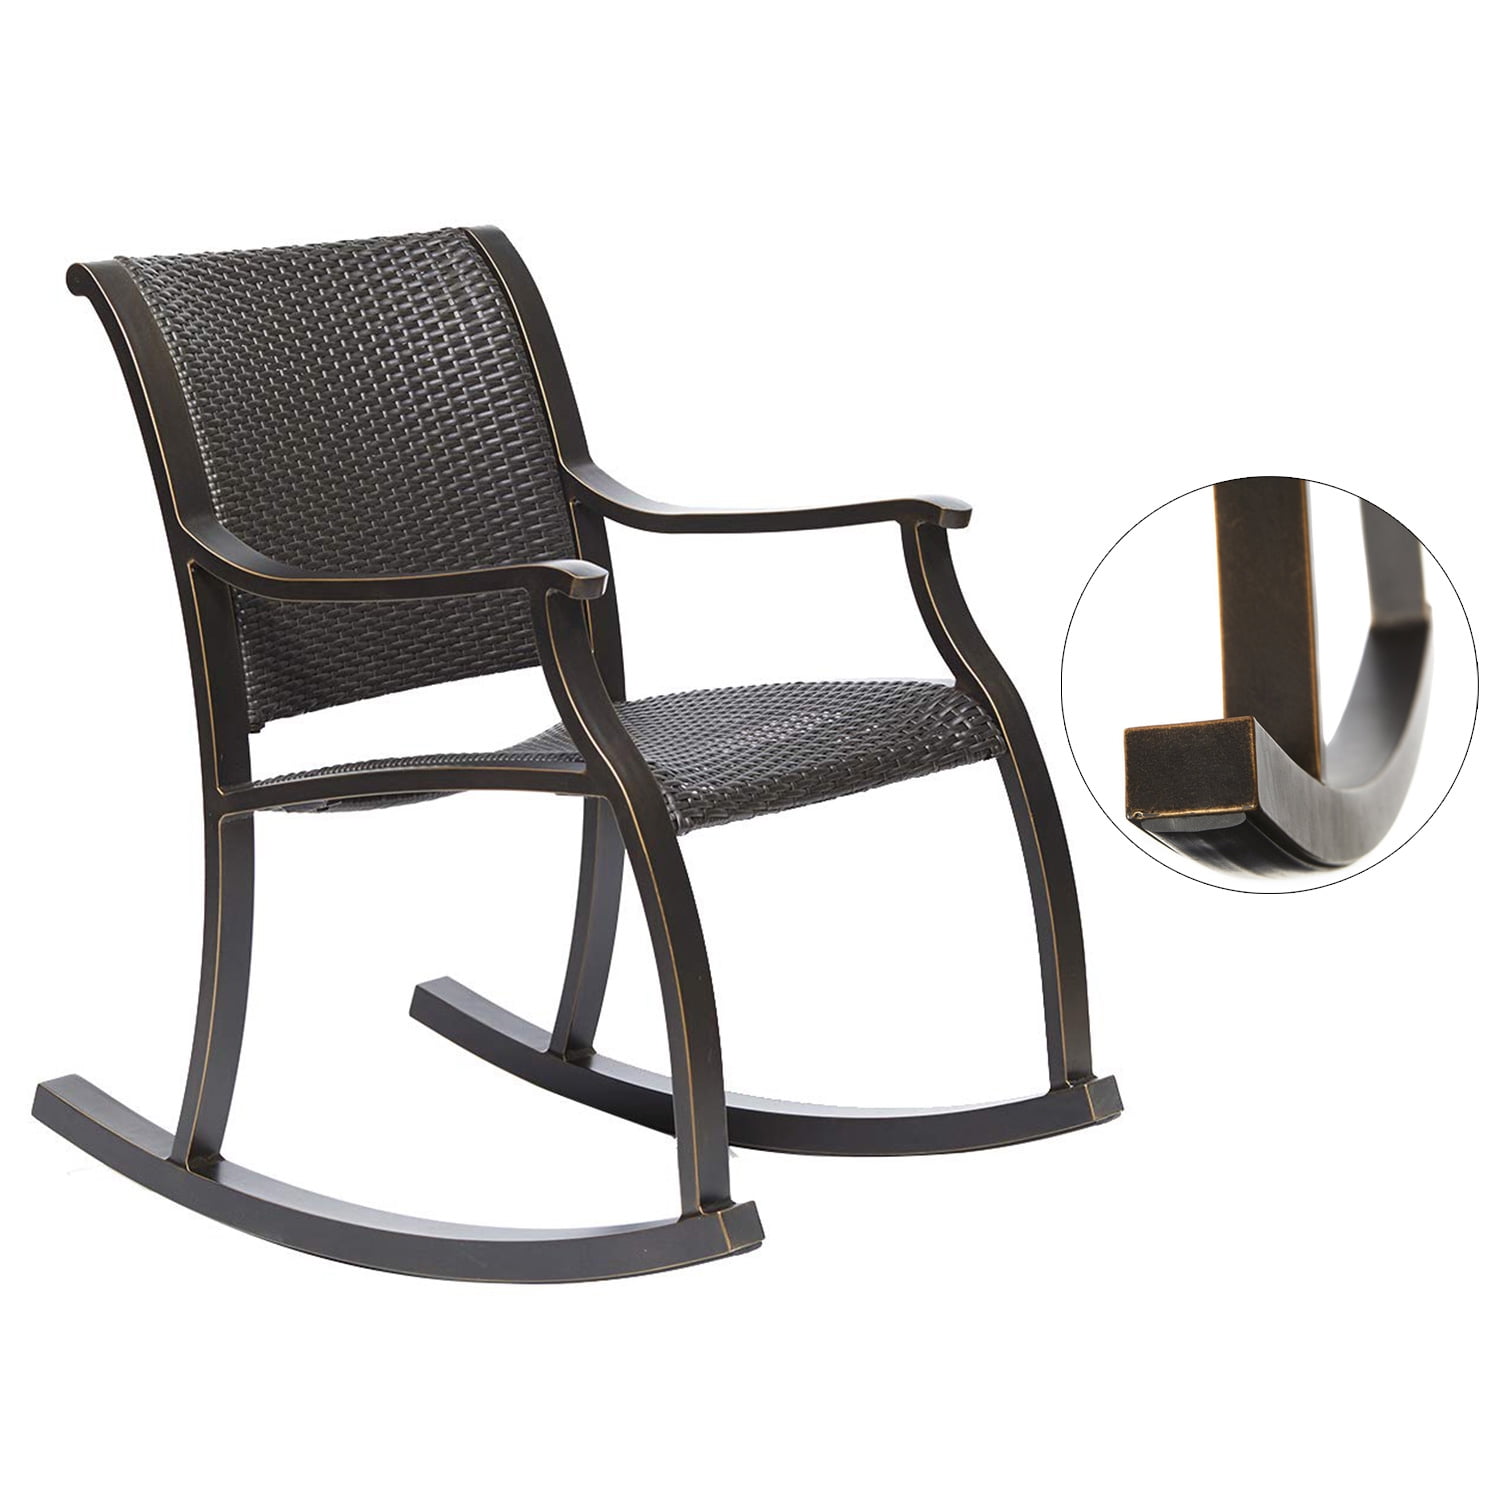 Rattan Rocker Chair, Weather Resistant Wicker Rocking Armchair Outdoor